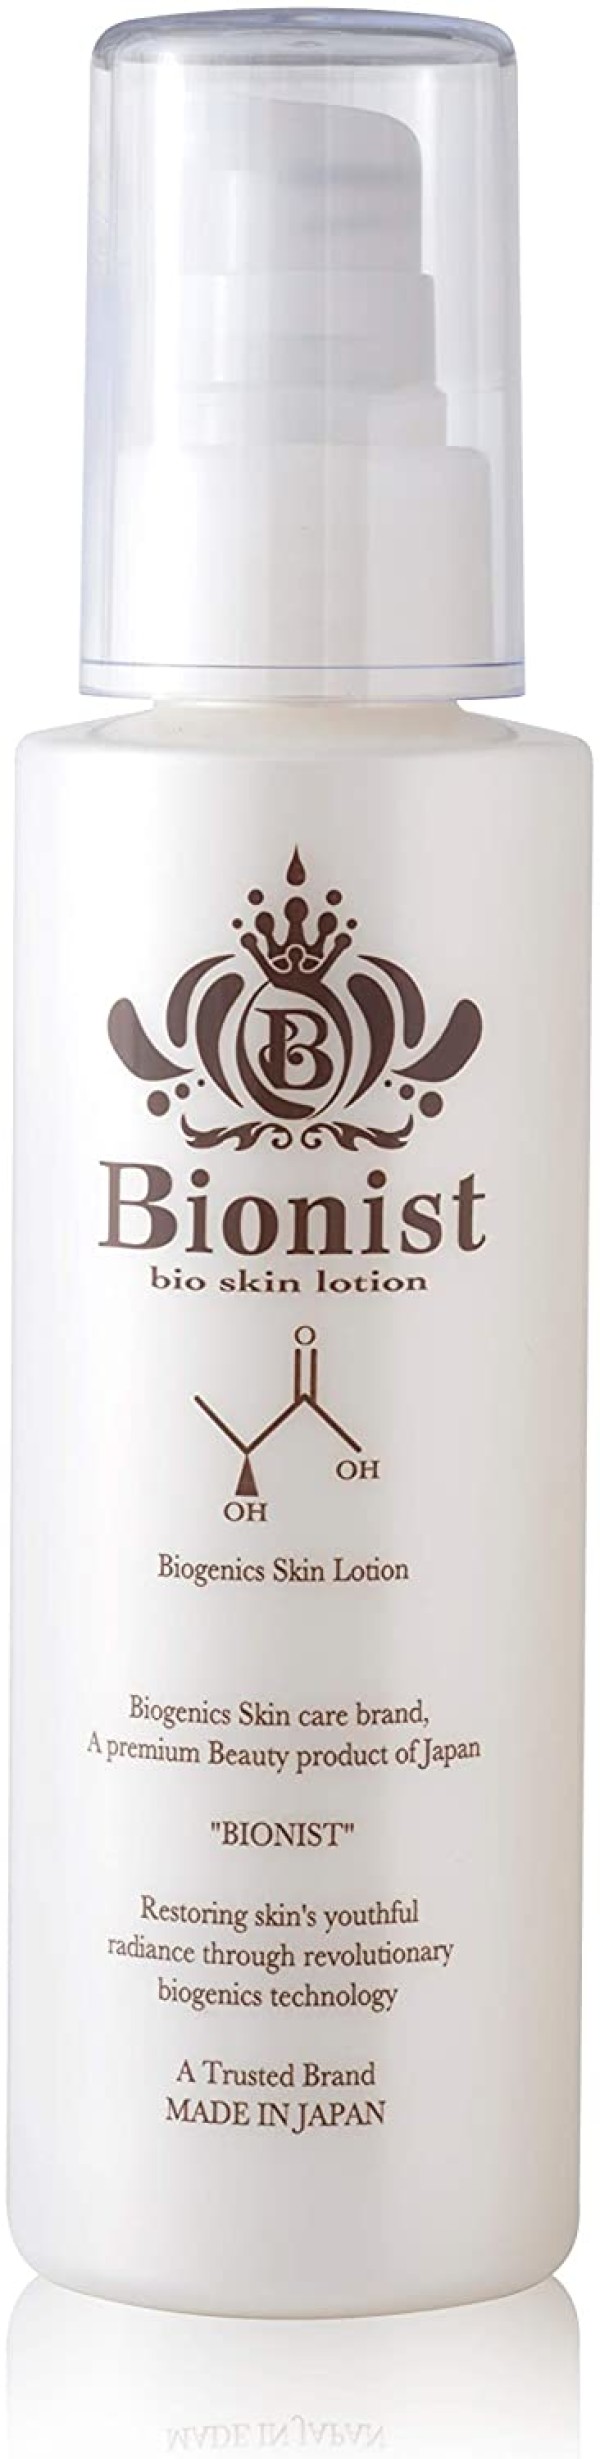 Биолосьон с пробиотиками и растительными экстрактами Bionist Bio Skin Lotion